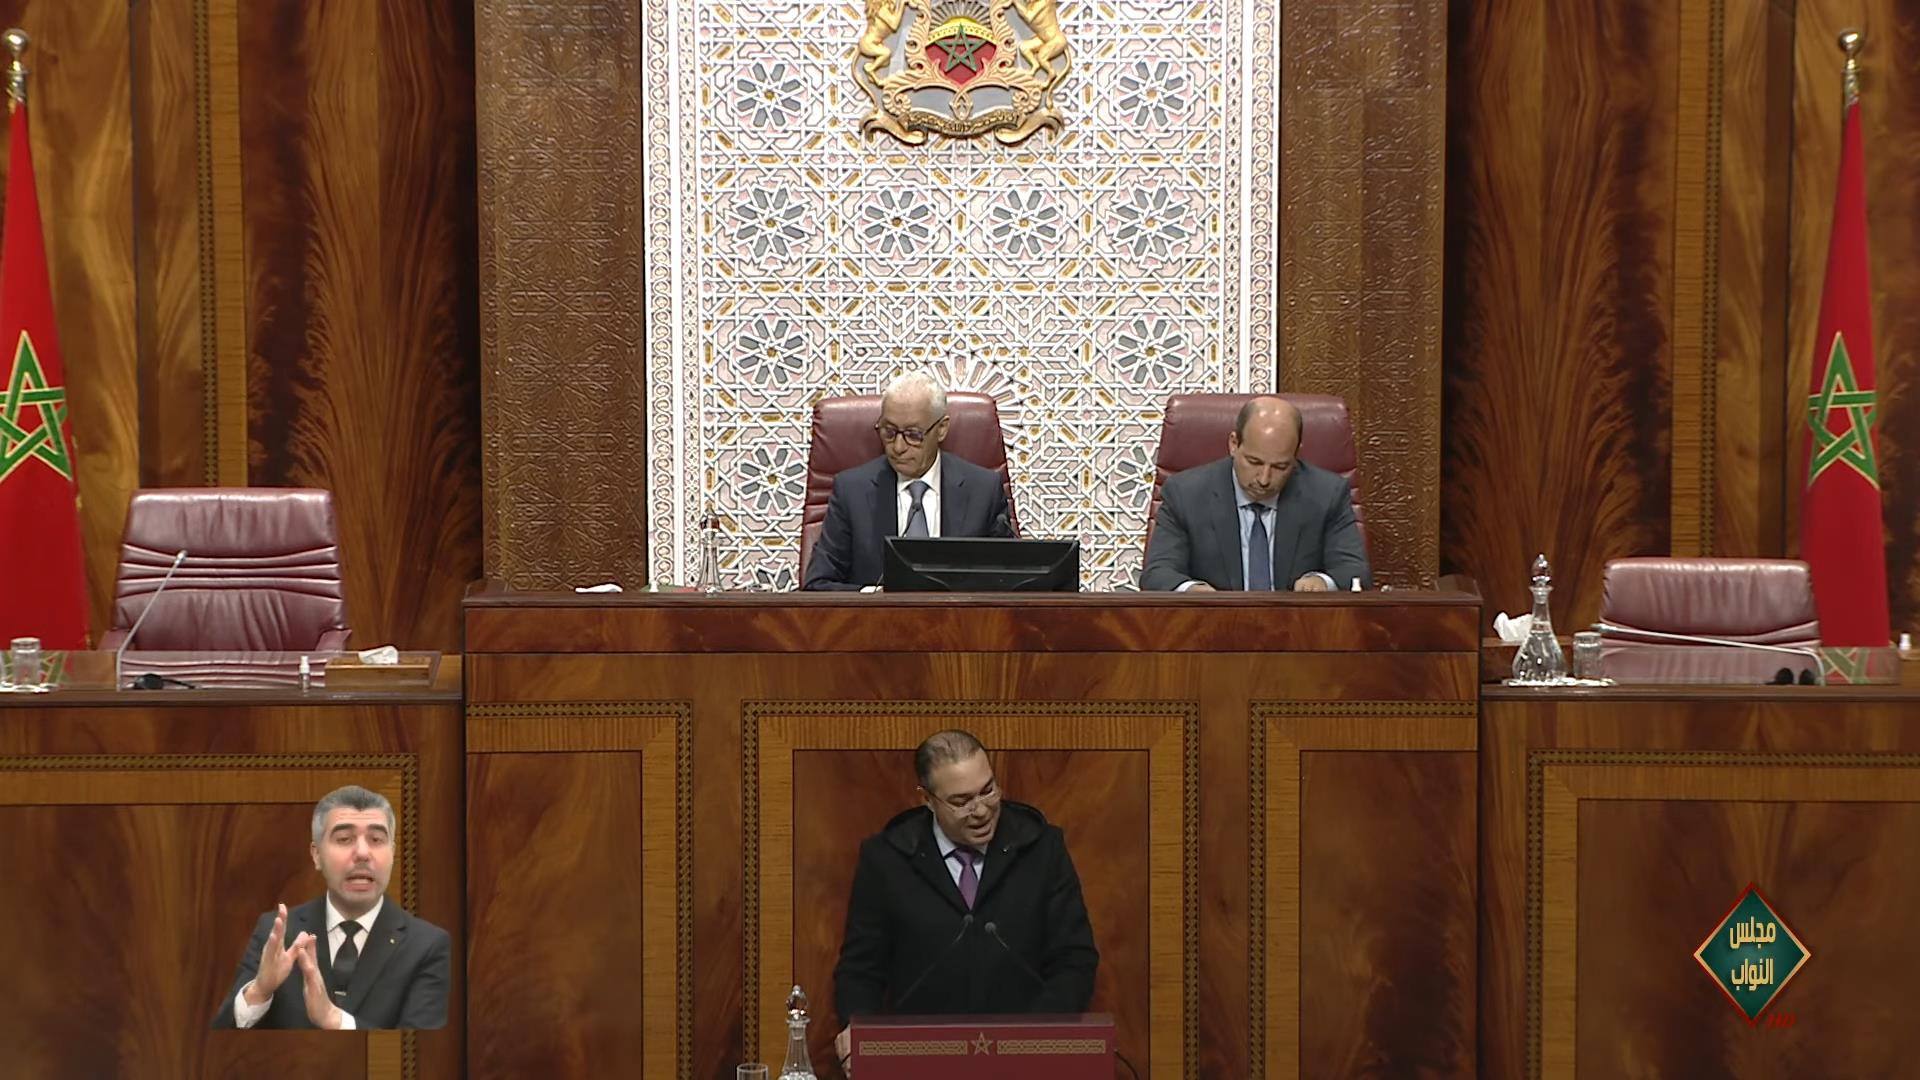 الجلسة العمومية لمجلسي البرلمان حول الموقف الأوروبي تجاه المغرب تنطلق اليوم